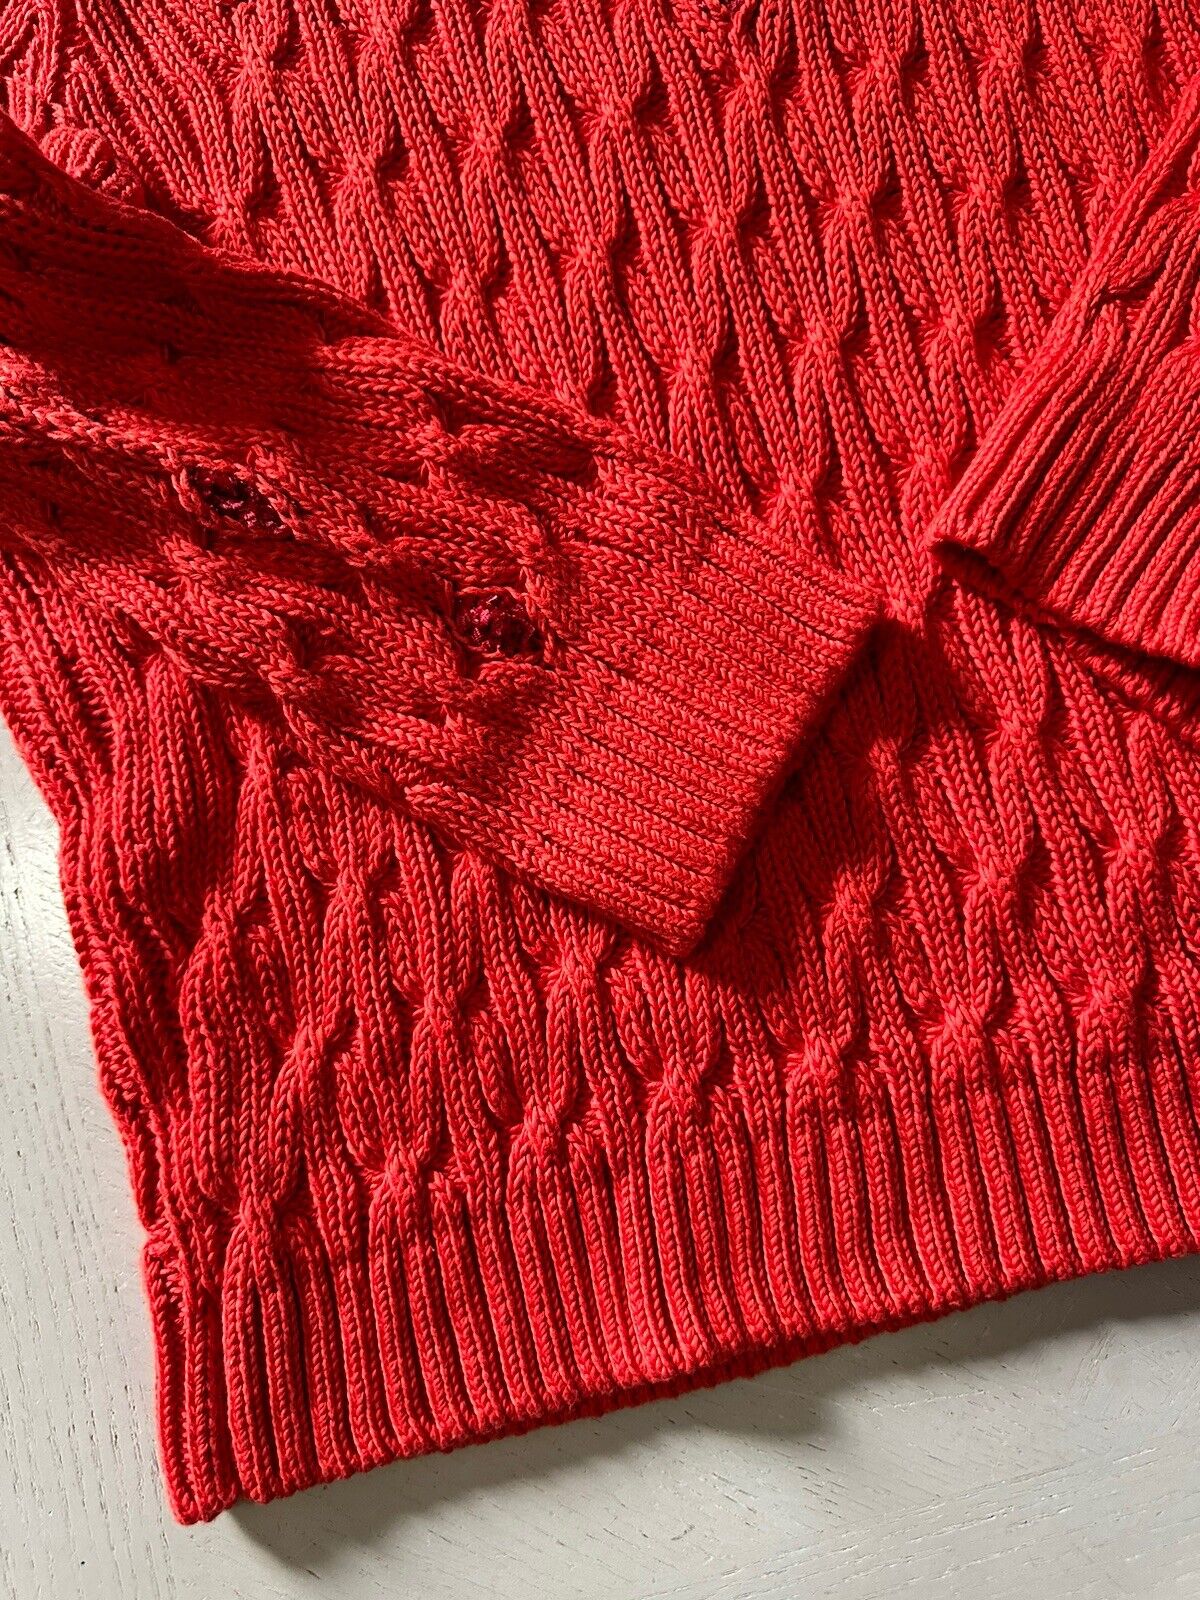 New $3350 Loro Piana Women Valencia Cabled Cotton Sweater Orange Size L Italy